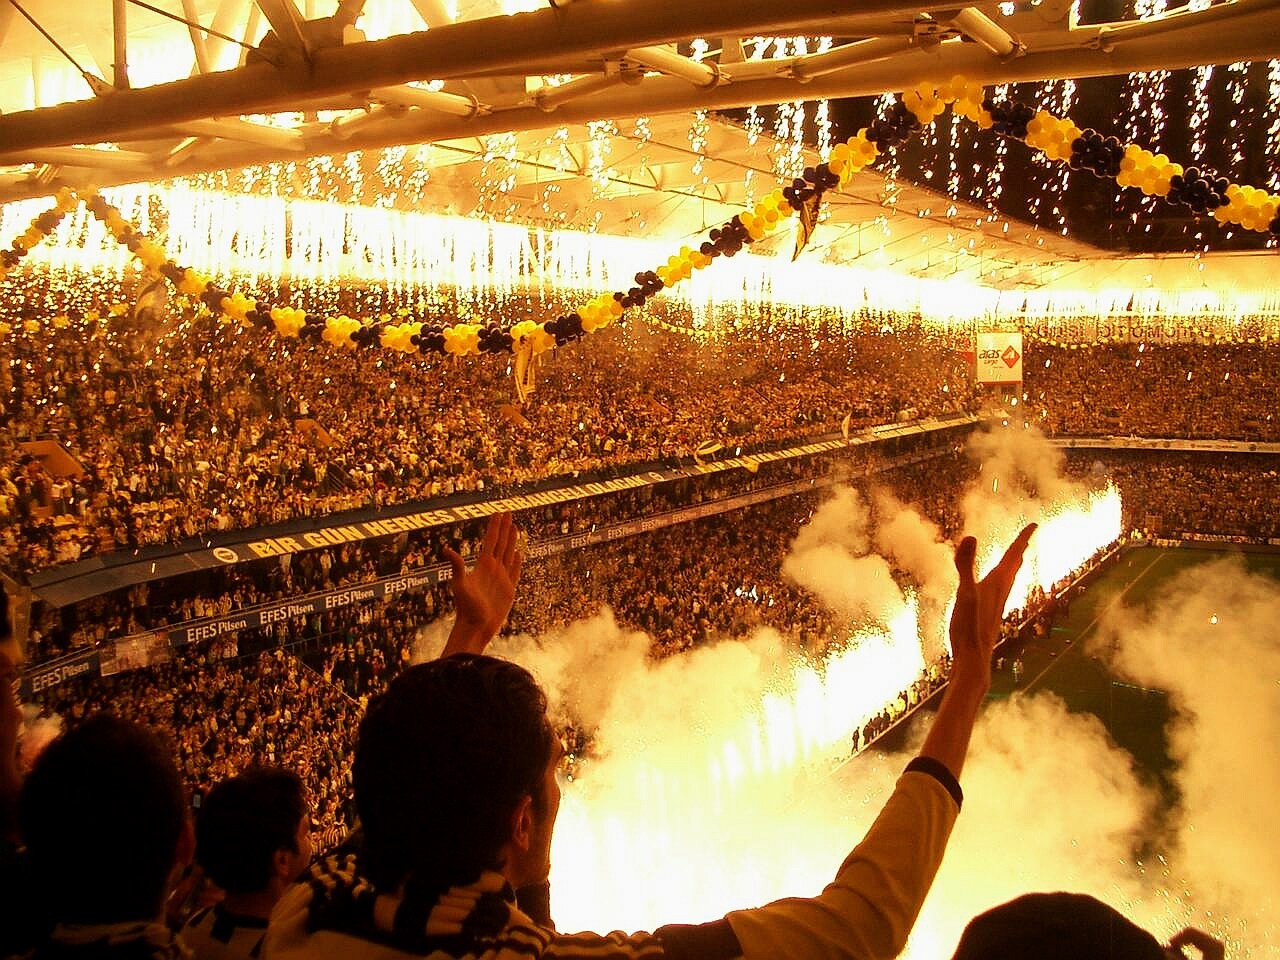 People 1280x960 Fenerbahçe people stadium sport soccer